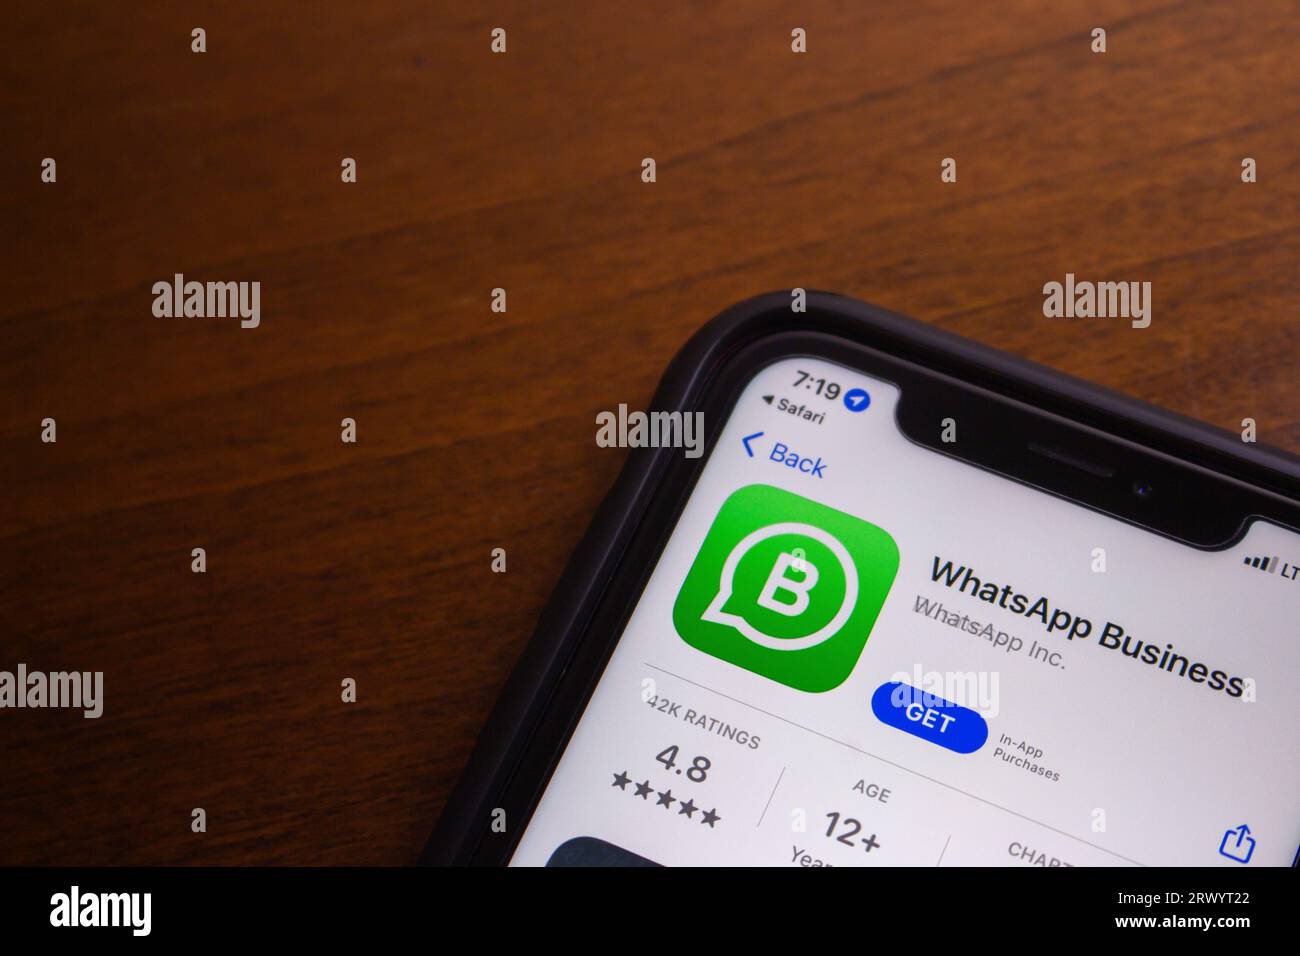 WhatsApp Business App vu dans App Store. WhatsApp Business est une application conçue pour les propriétaires d'entreprise qui veulent communiquer avec les clients par WhatsApp Banque D'Images